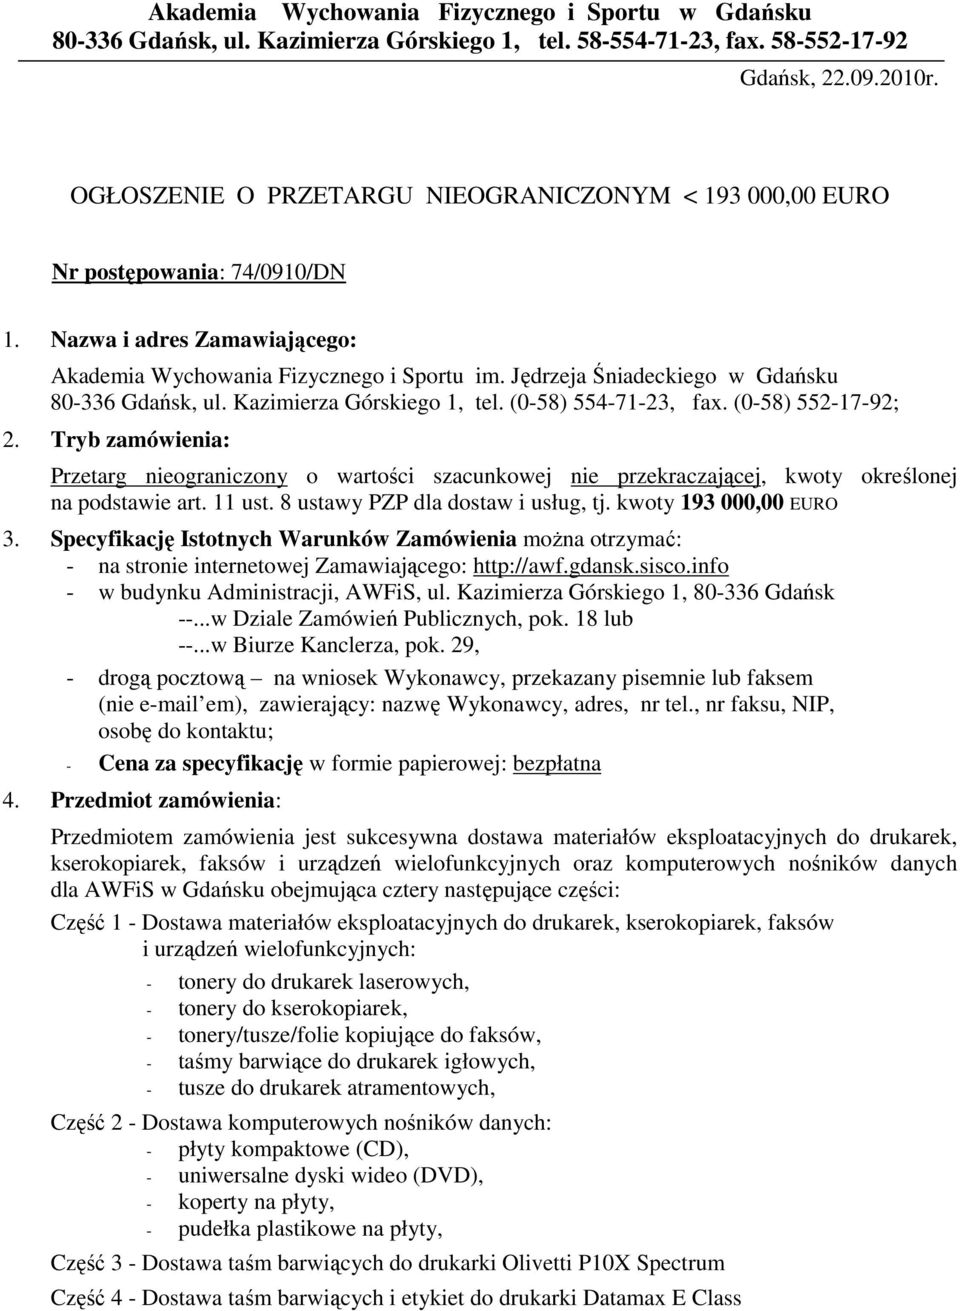 Jędrzeja Śniadeckiego w Gdańsku 80-336 Gdańsk, ul. Kazimierza Górskiego 1, tel. (0-58) 554-71-23, fax. (0-58) 552-17-92; 2.